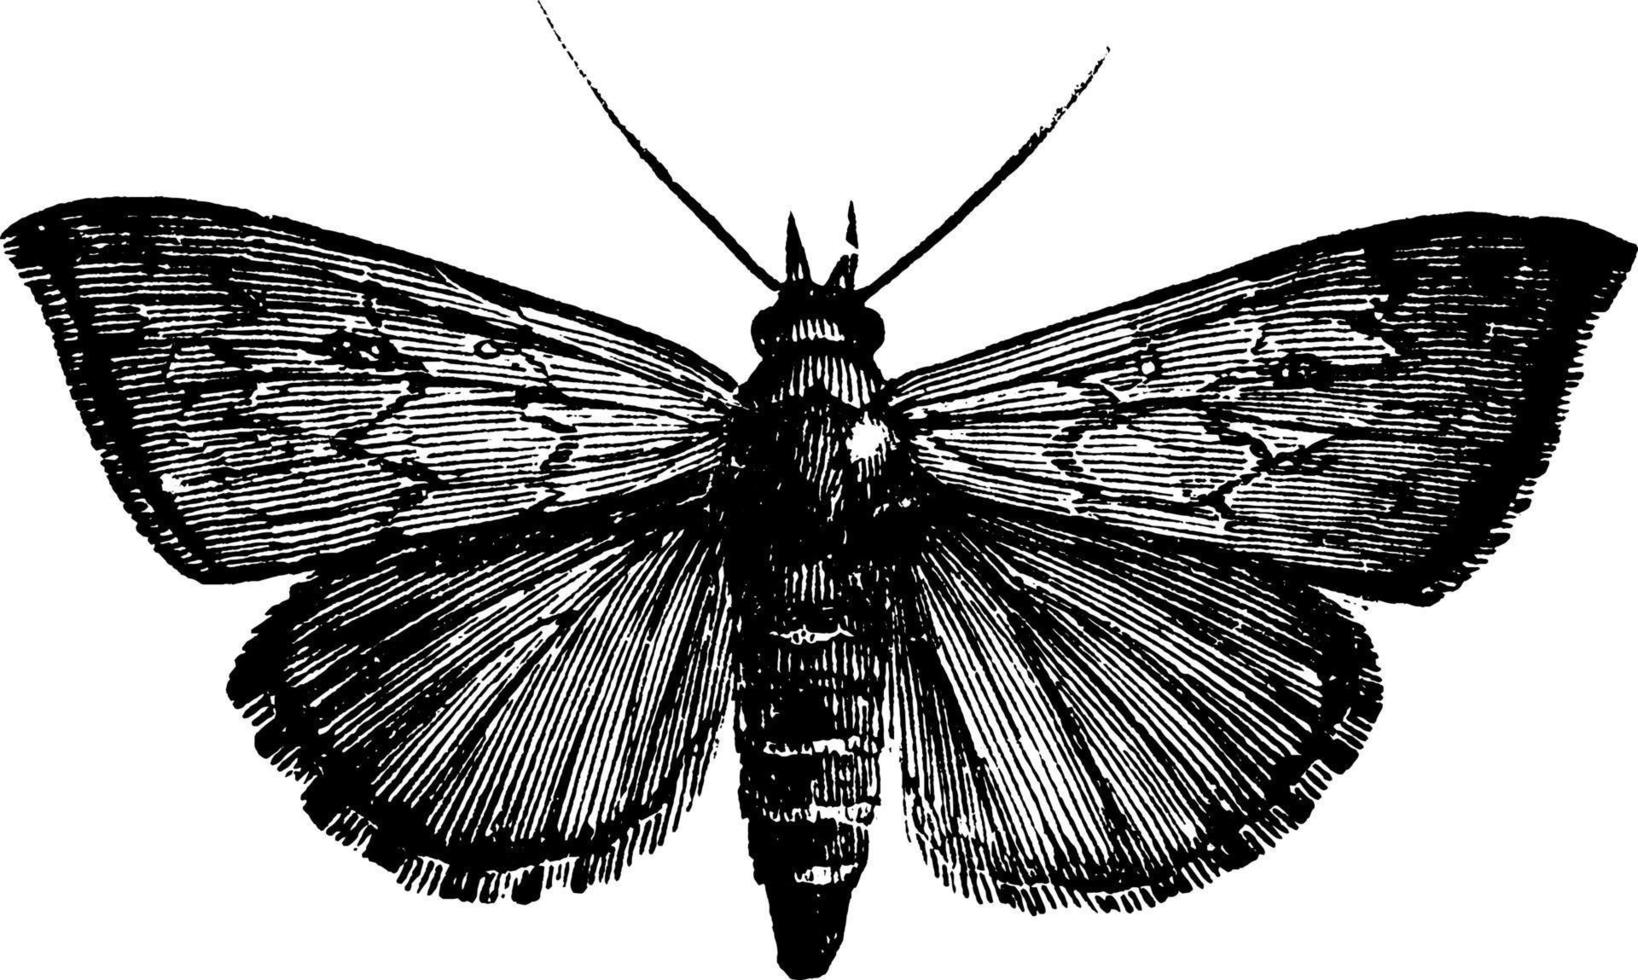 owlet moth ou aletia argillacea, illustration vintage. vecteur